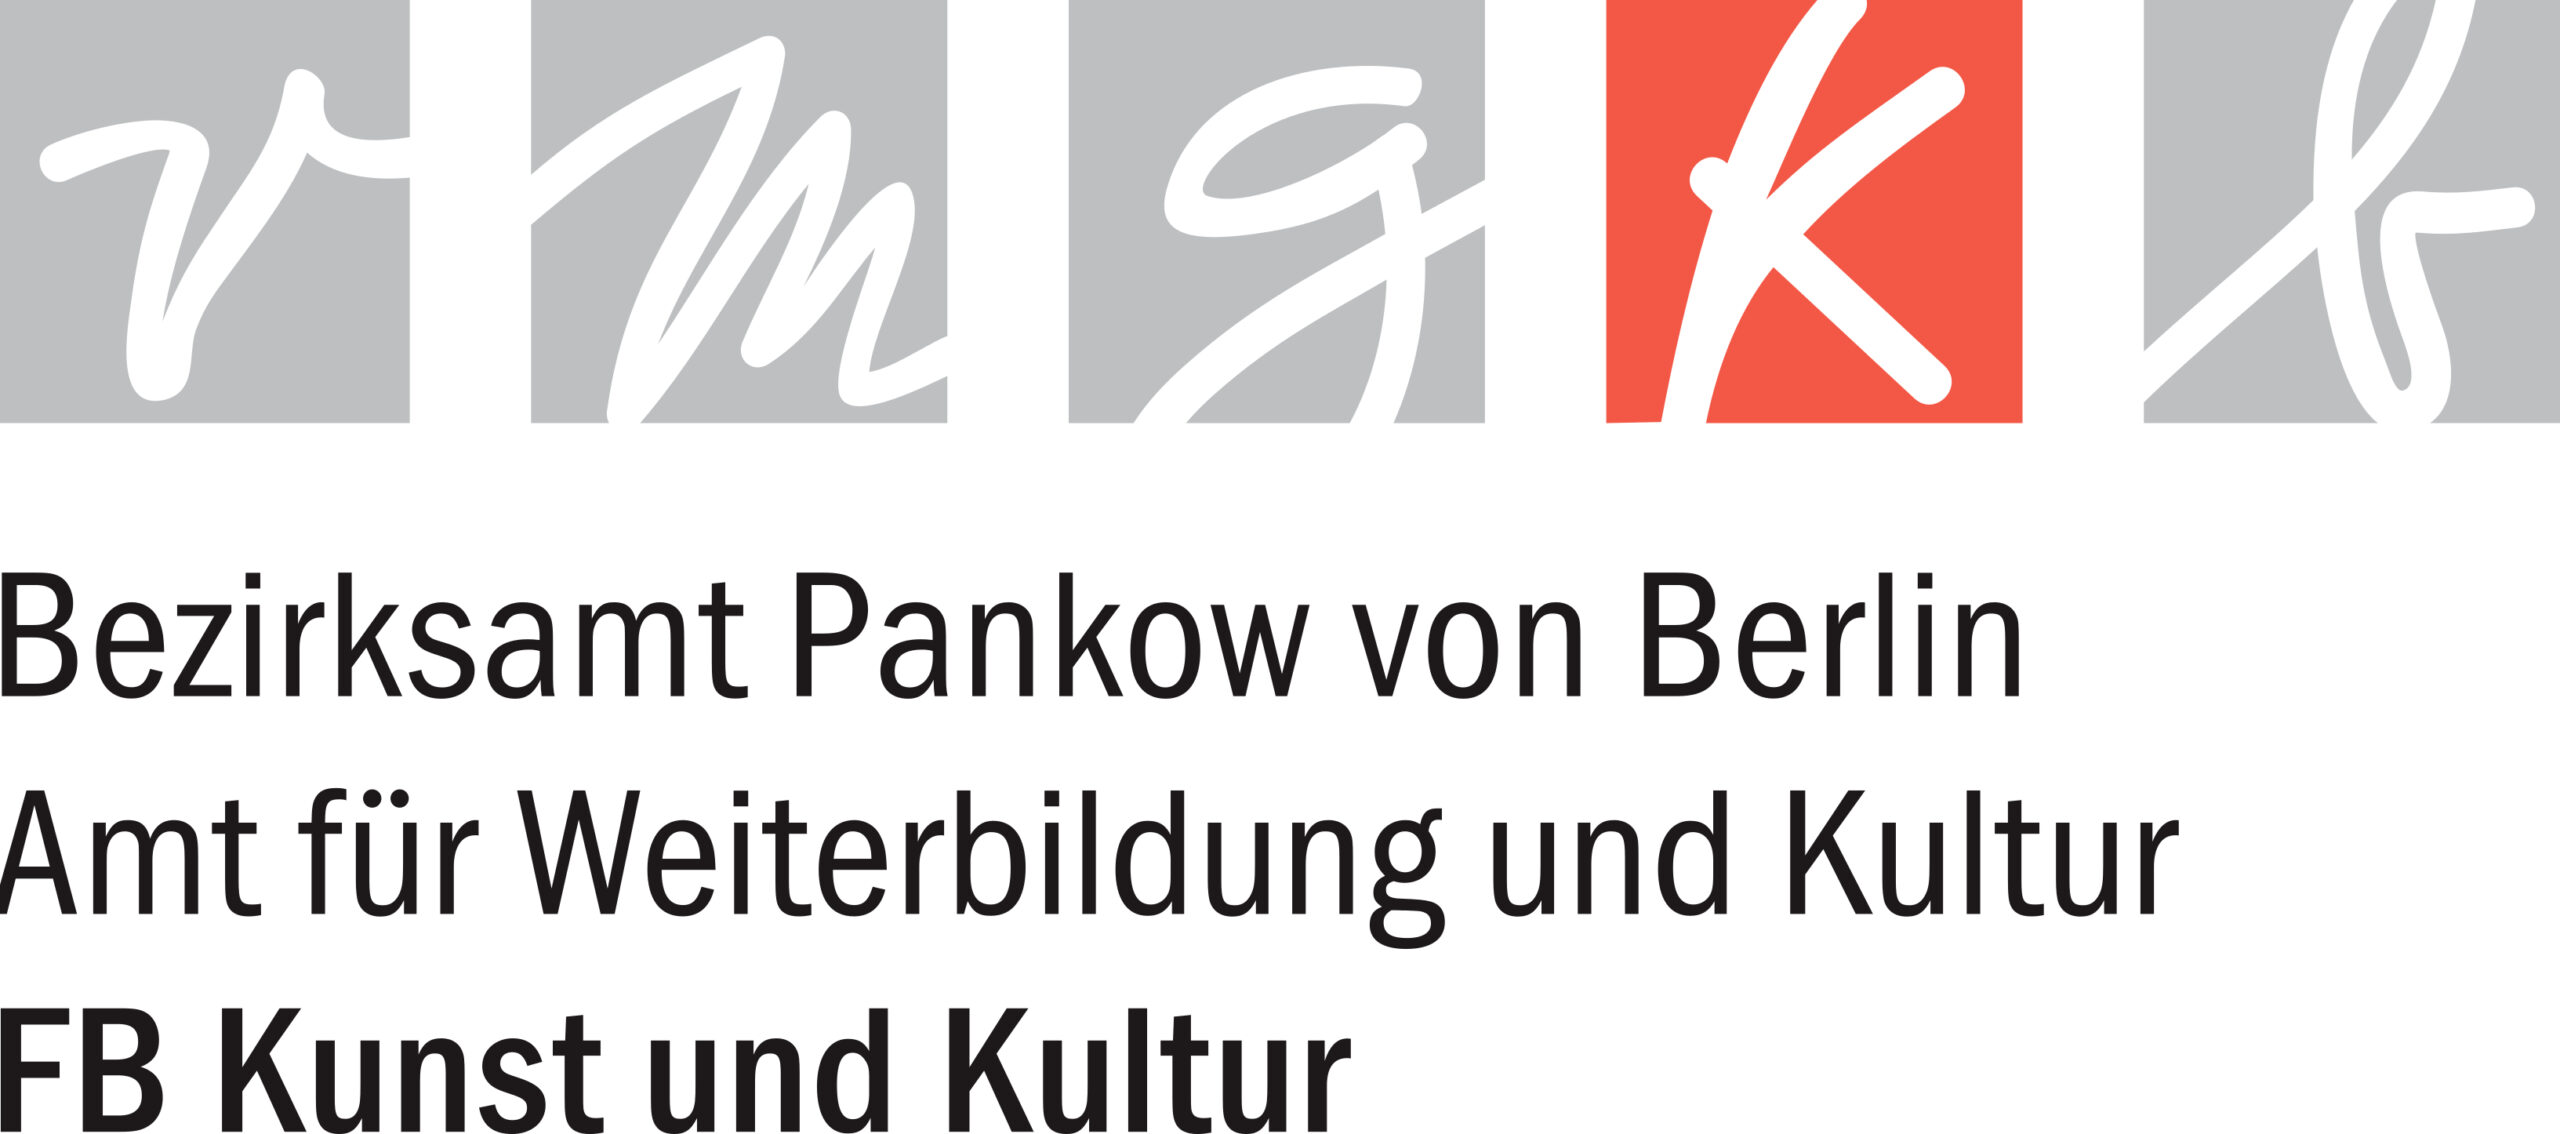 Logo: Bezirksamt Pankow von Berlin, Amt für Weiterbildung und Kultur – Fachbereich Kunst und Kultur